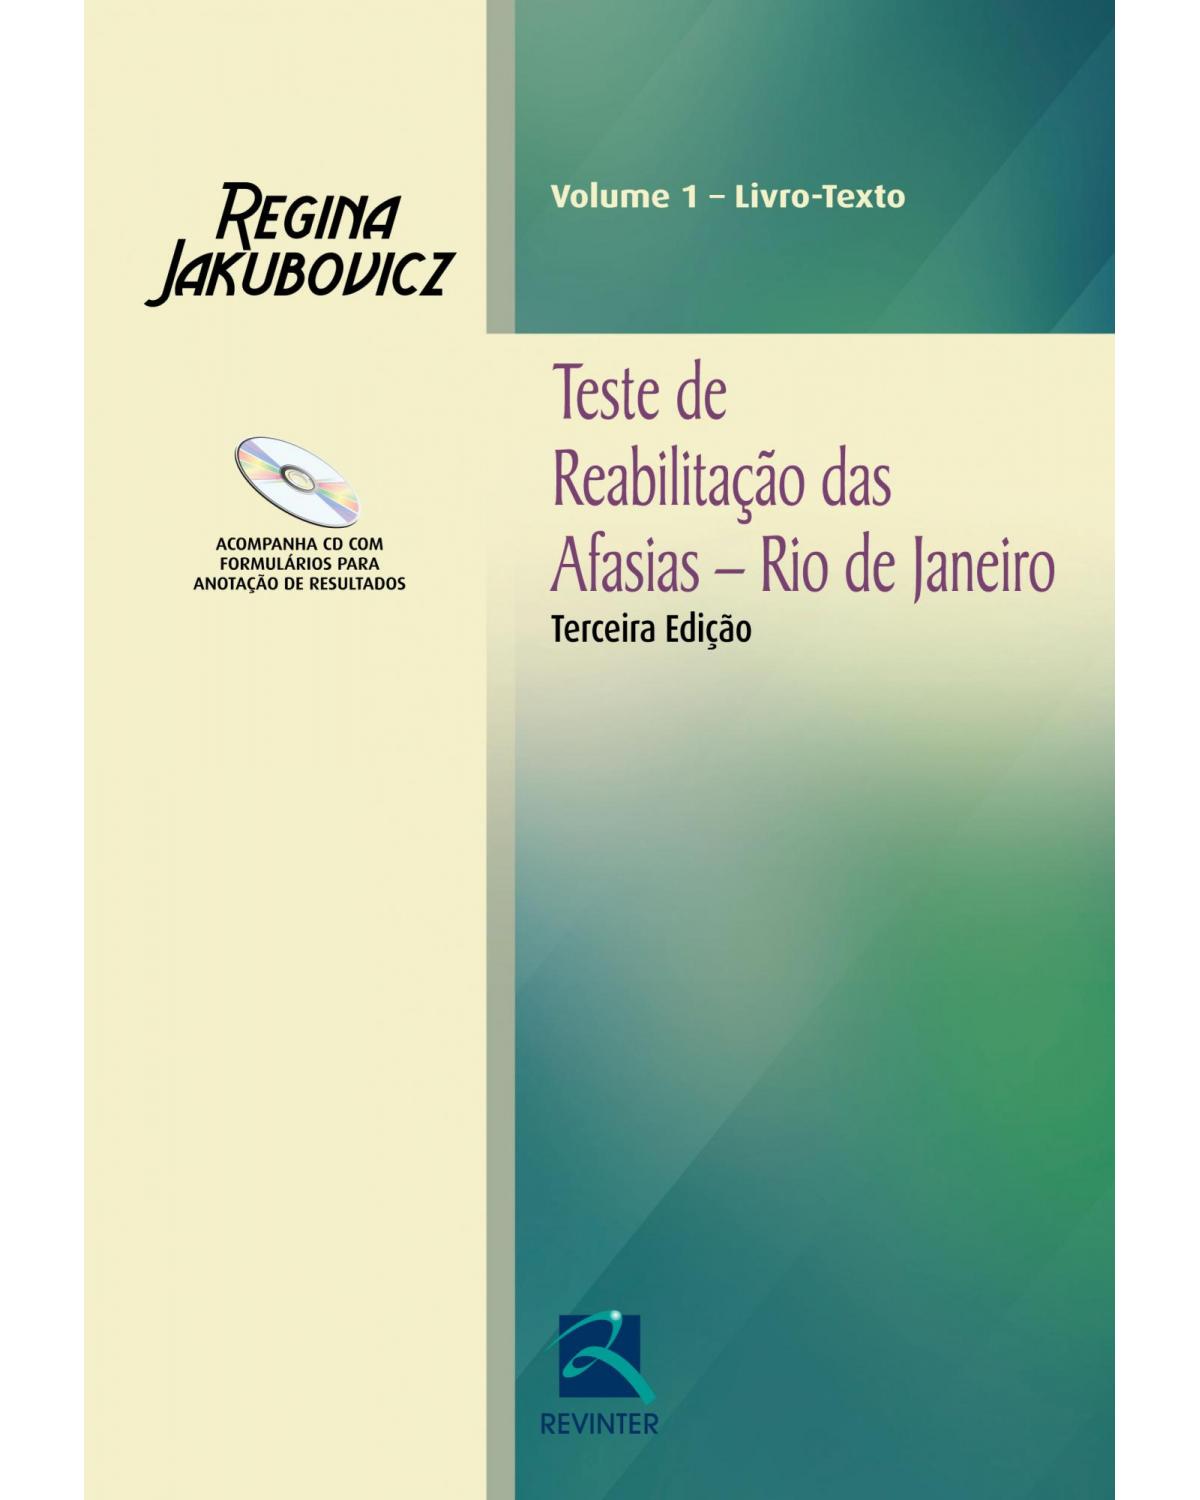 Teste de reabilitação das afasias - Rio de Janeiro - 3ª Edição | 2014